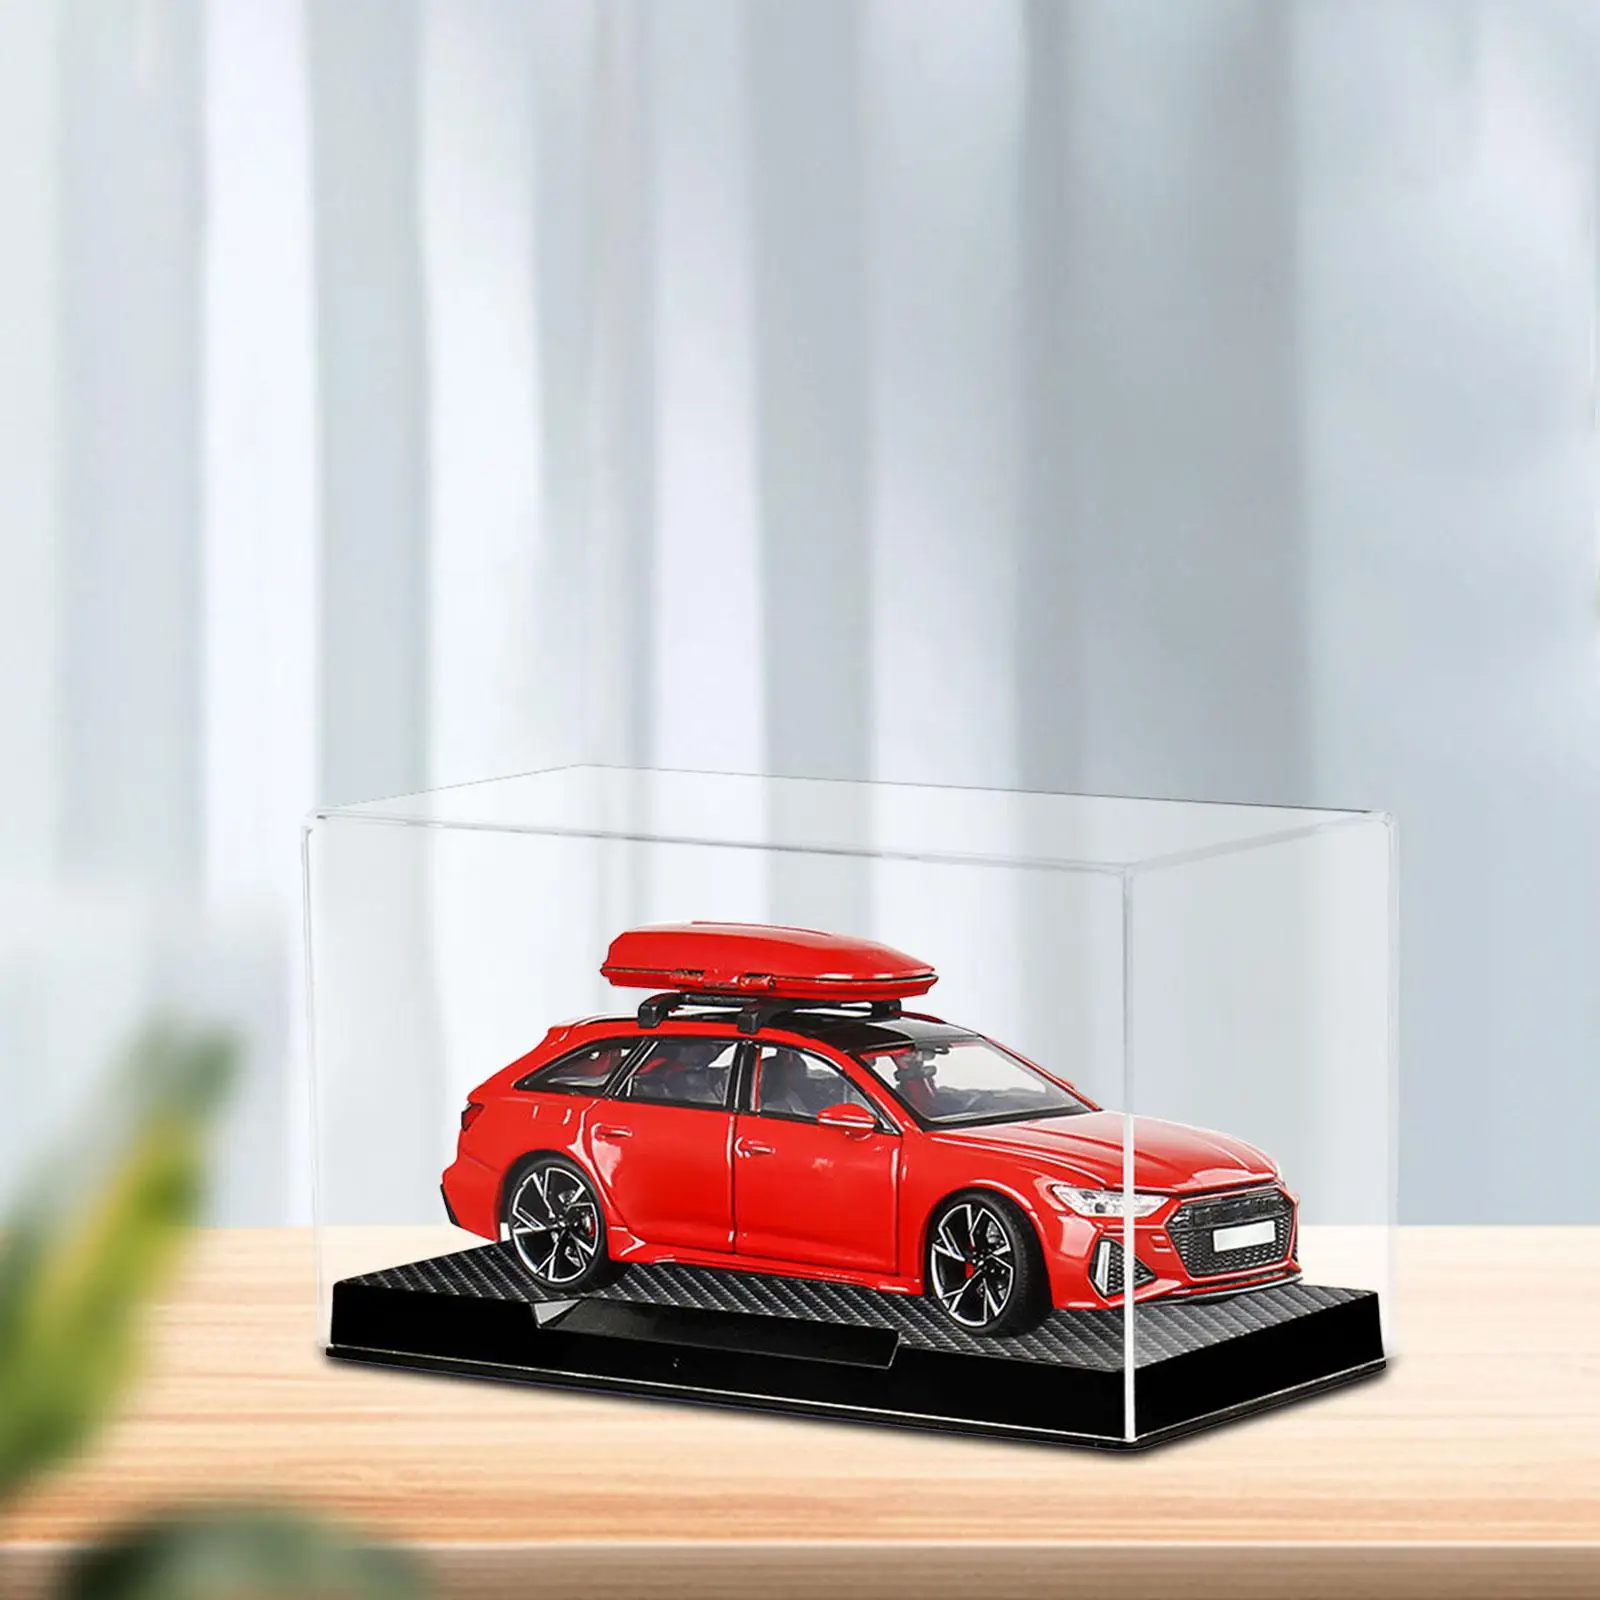 

Прозрачная акриловая витрина, Декоративная прозрачная модель автомобиля в масштабе 1:32, витрина для моделей автомобилей, коллекционные предметы, миниатюрные фигурки